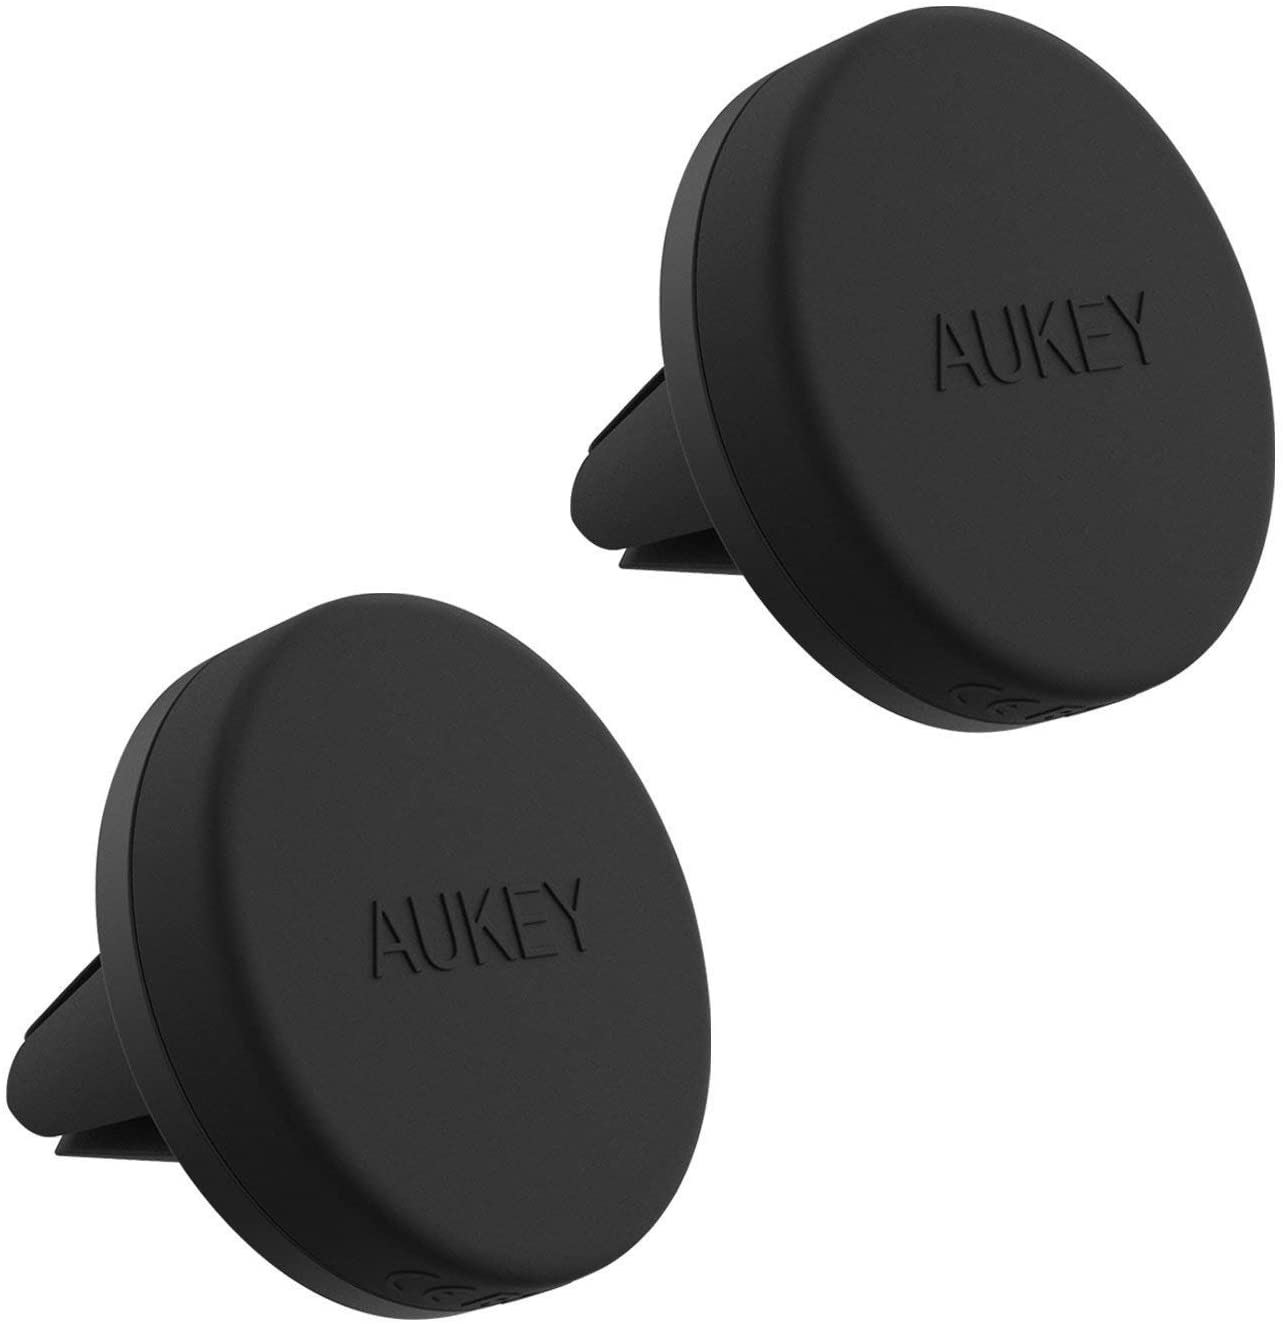  AUKEY Soporte Móvil Coche Magnético Universal (2 Pack) para Rejillas del Aire Soporte Smartphone Coche para iPhone 7 / 6s / 6 / 5s / 5, Samsung Note 8 / S8 / Note 4, LG G3 y Dispositivo GPS (Negro) 